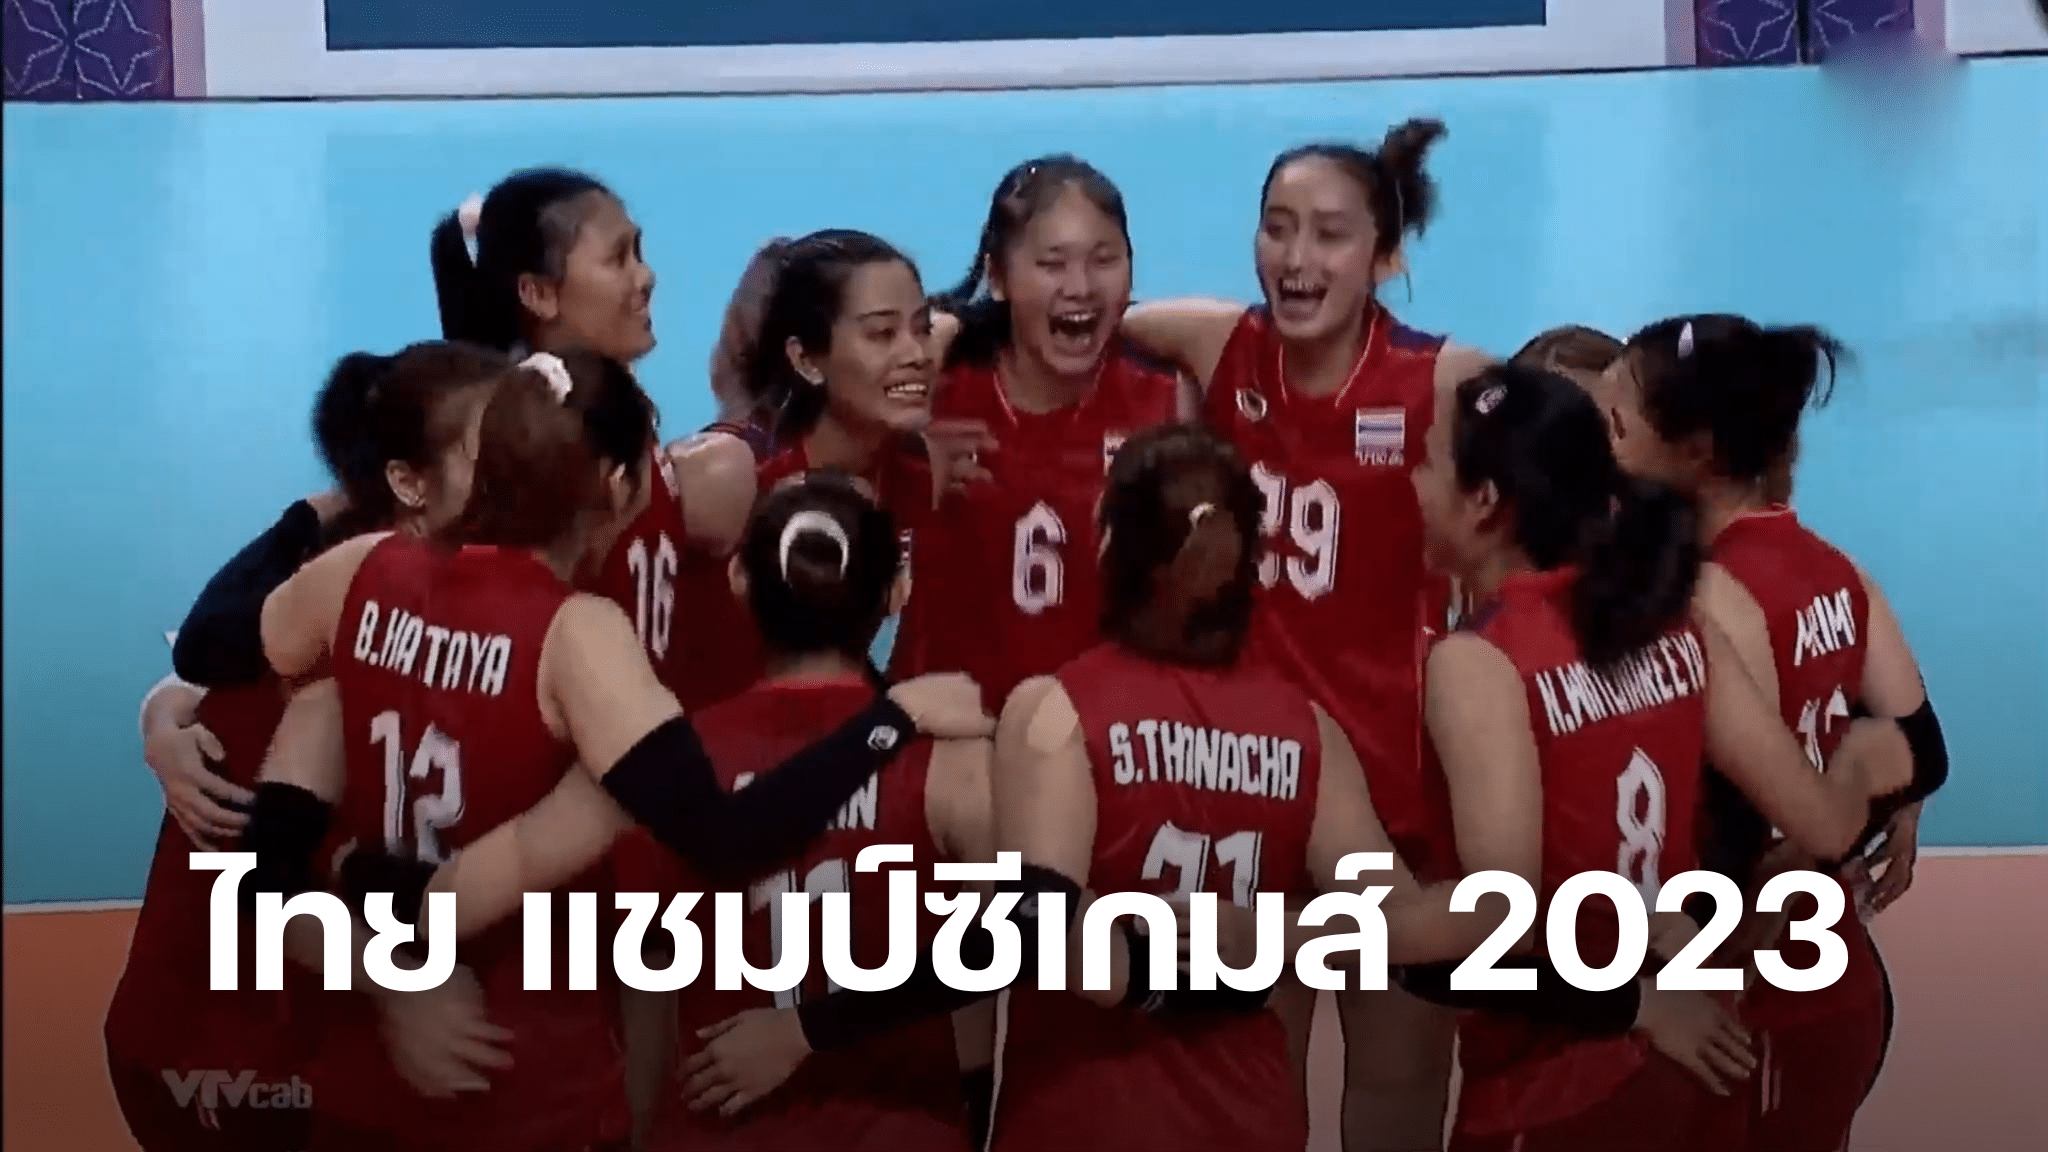 วอลเลย์บอลหญิงไทย แชมป์ซีเกมส์ 2023